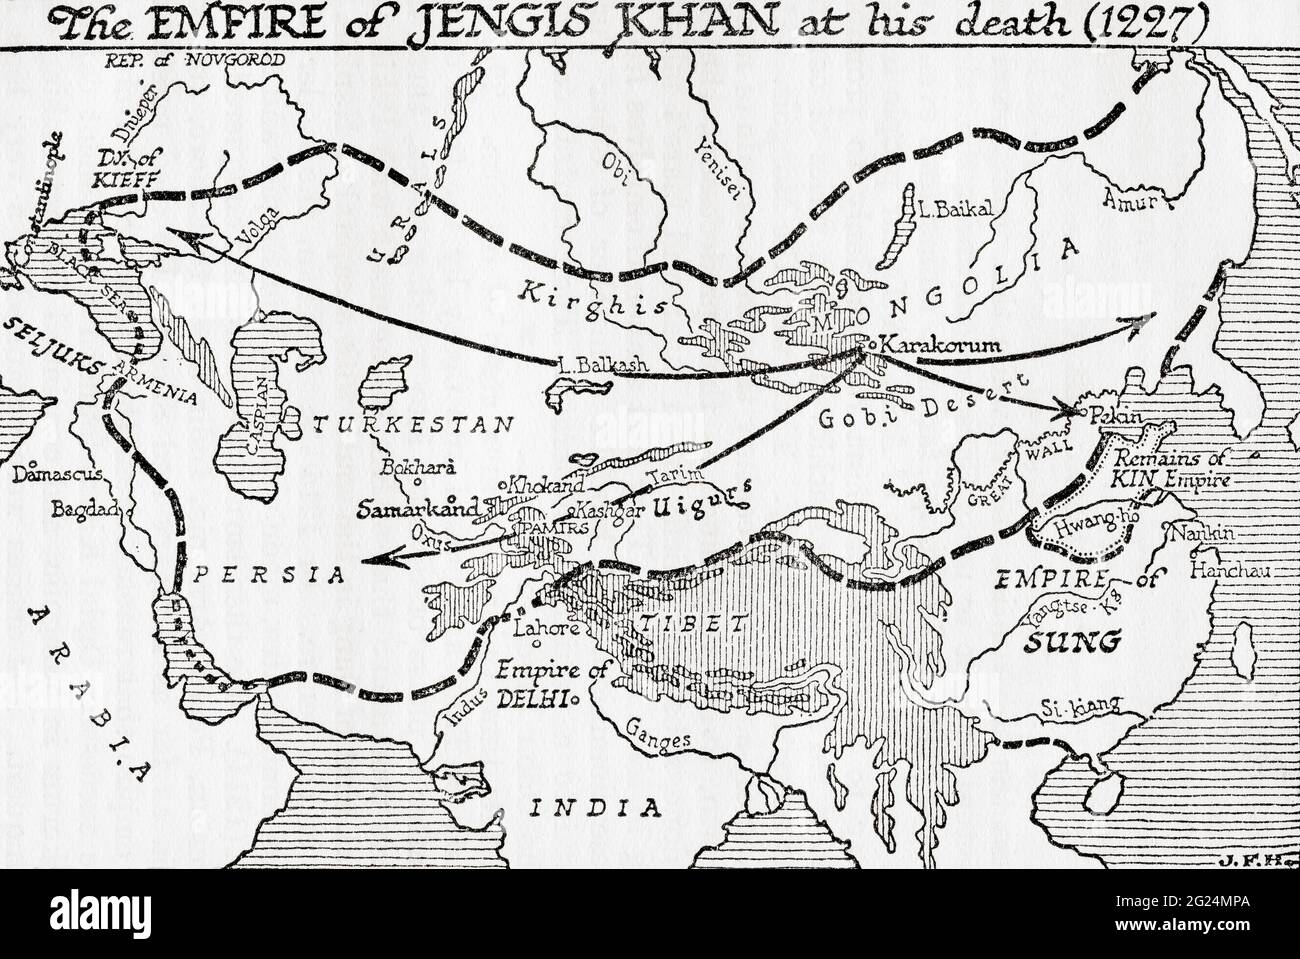 Carte montrant l'Empire de Jengis Khan, ou Gengis Khan, à sa mort, 1227. Tiré d'UNE brève histoire du monde, publié vers 1936 Banque D'Images